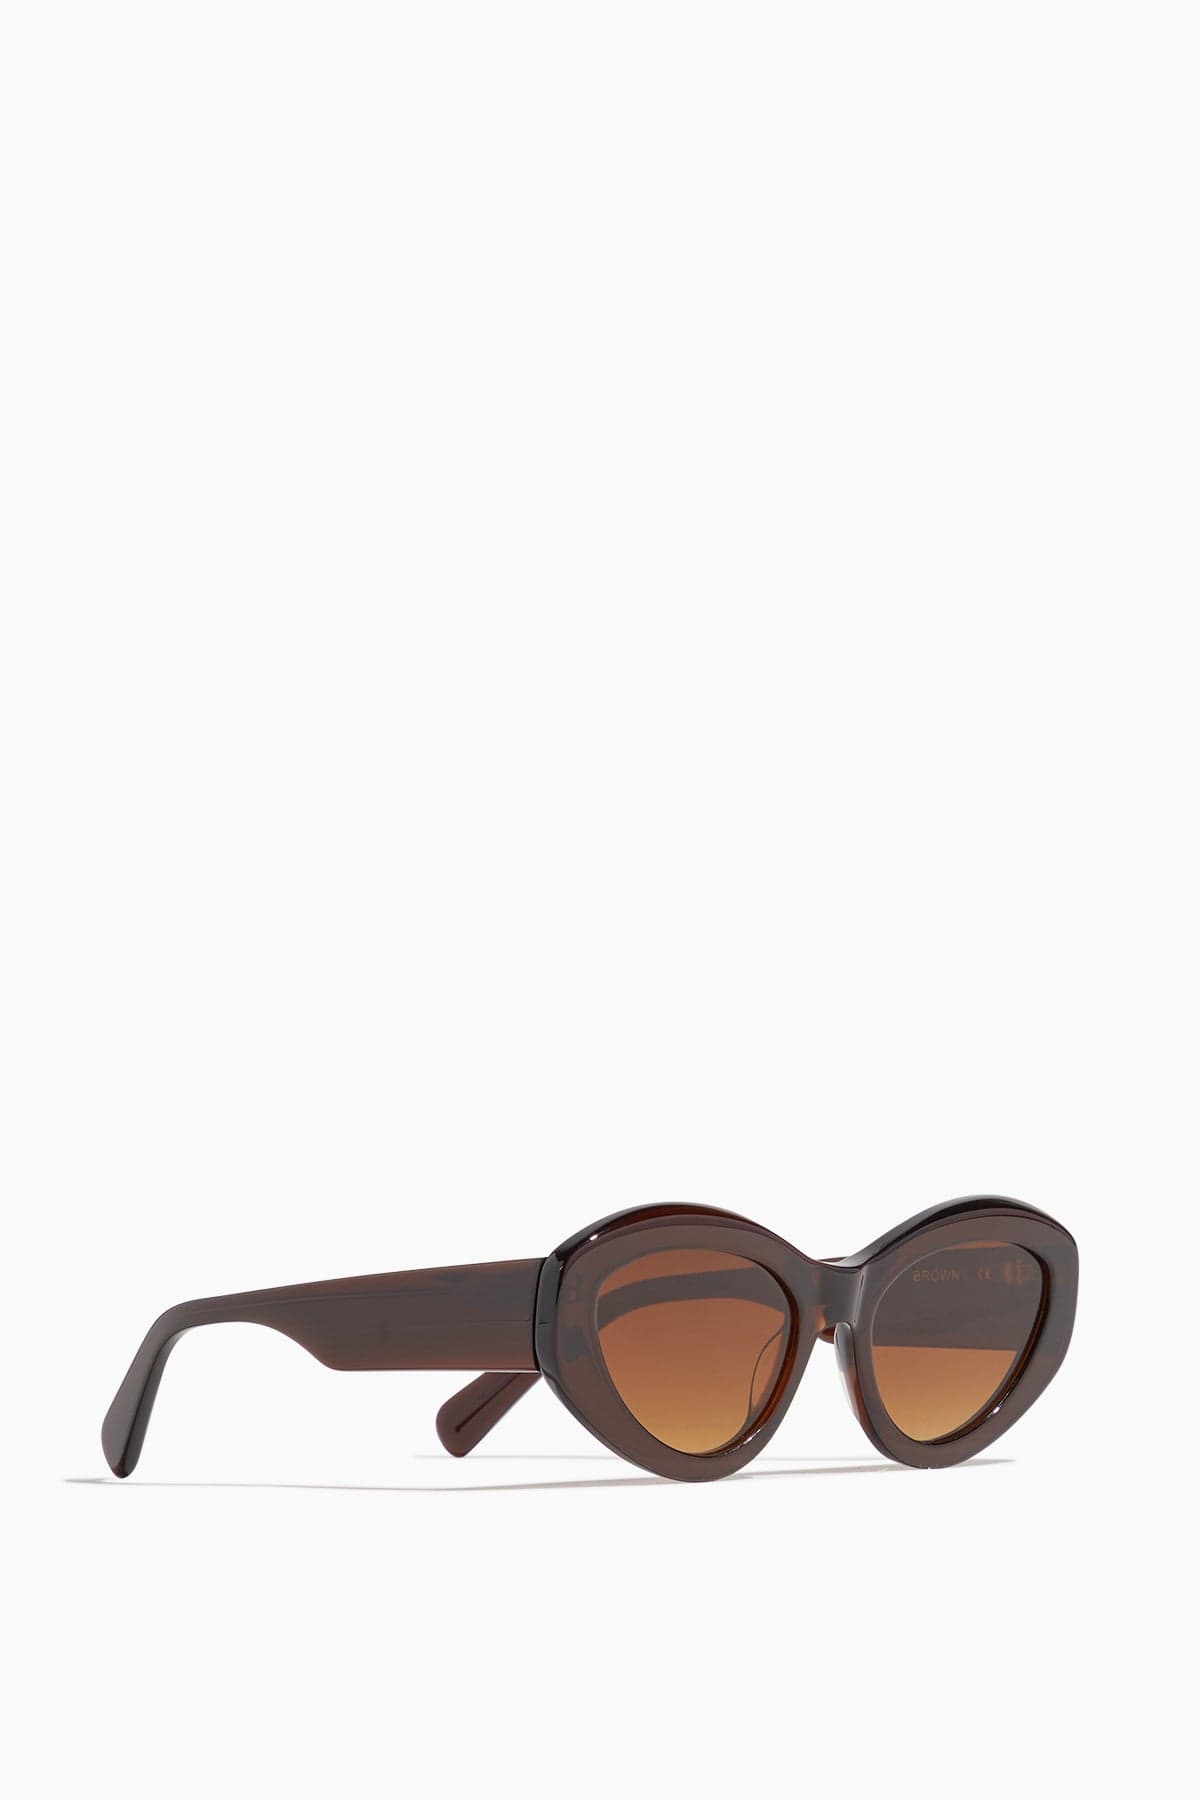 Chimi Sunglasses #09 Sunglasses in Brown Chimi #09 Sunglasses in Brown